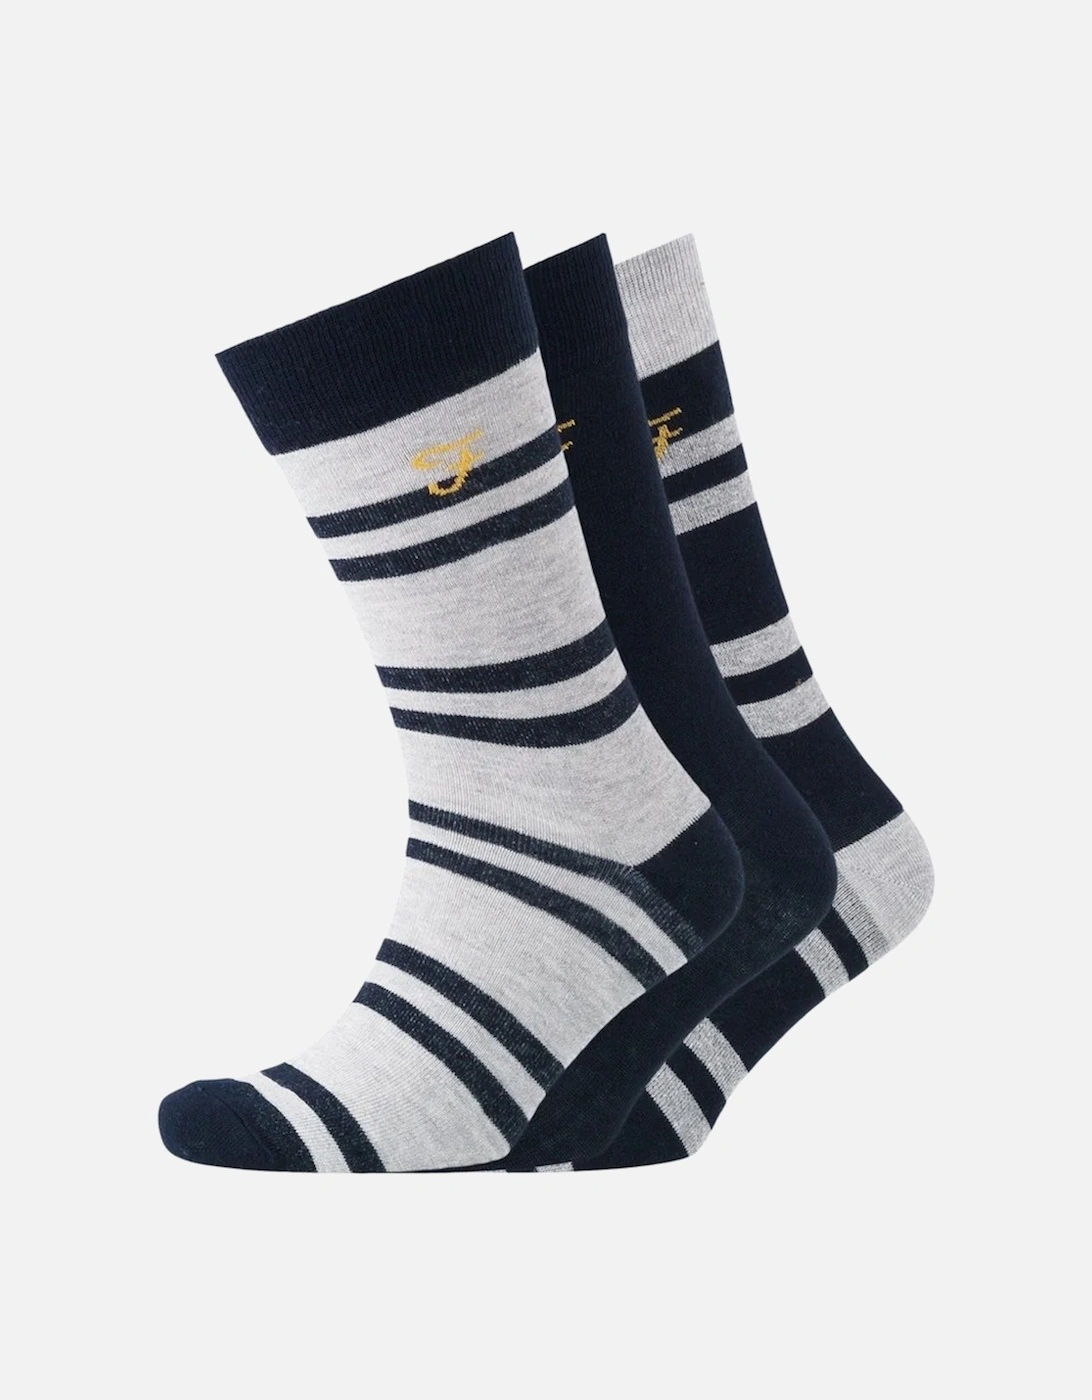 Mens Falton Striped Socks (Pack of 3), 5 of 4